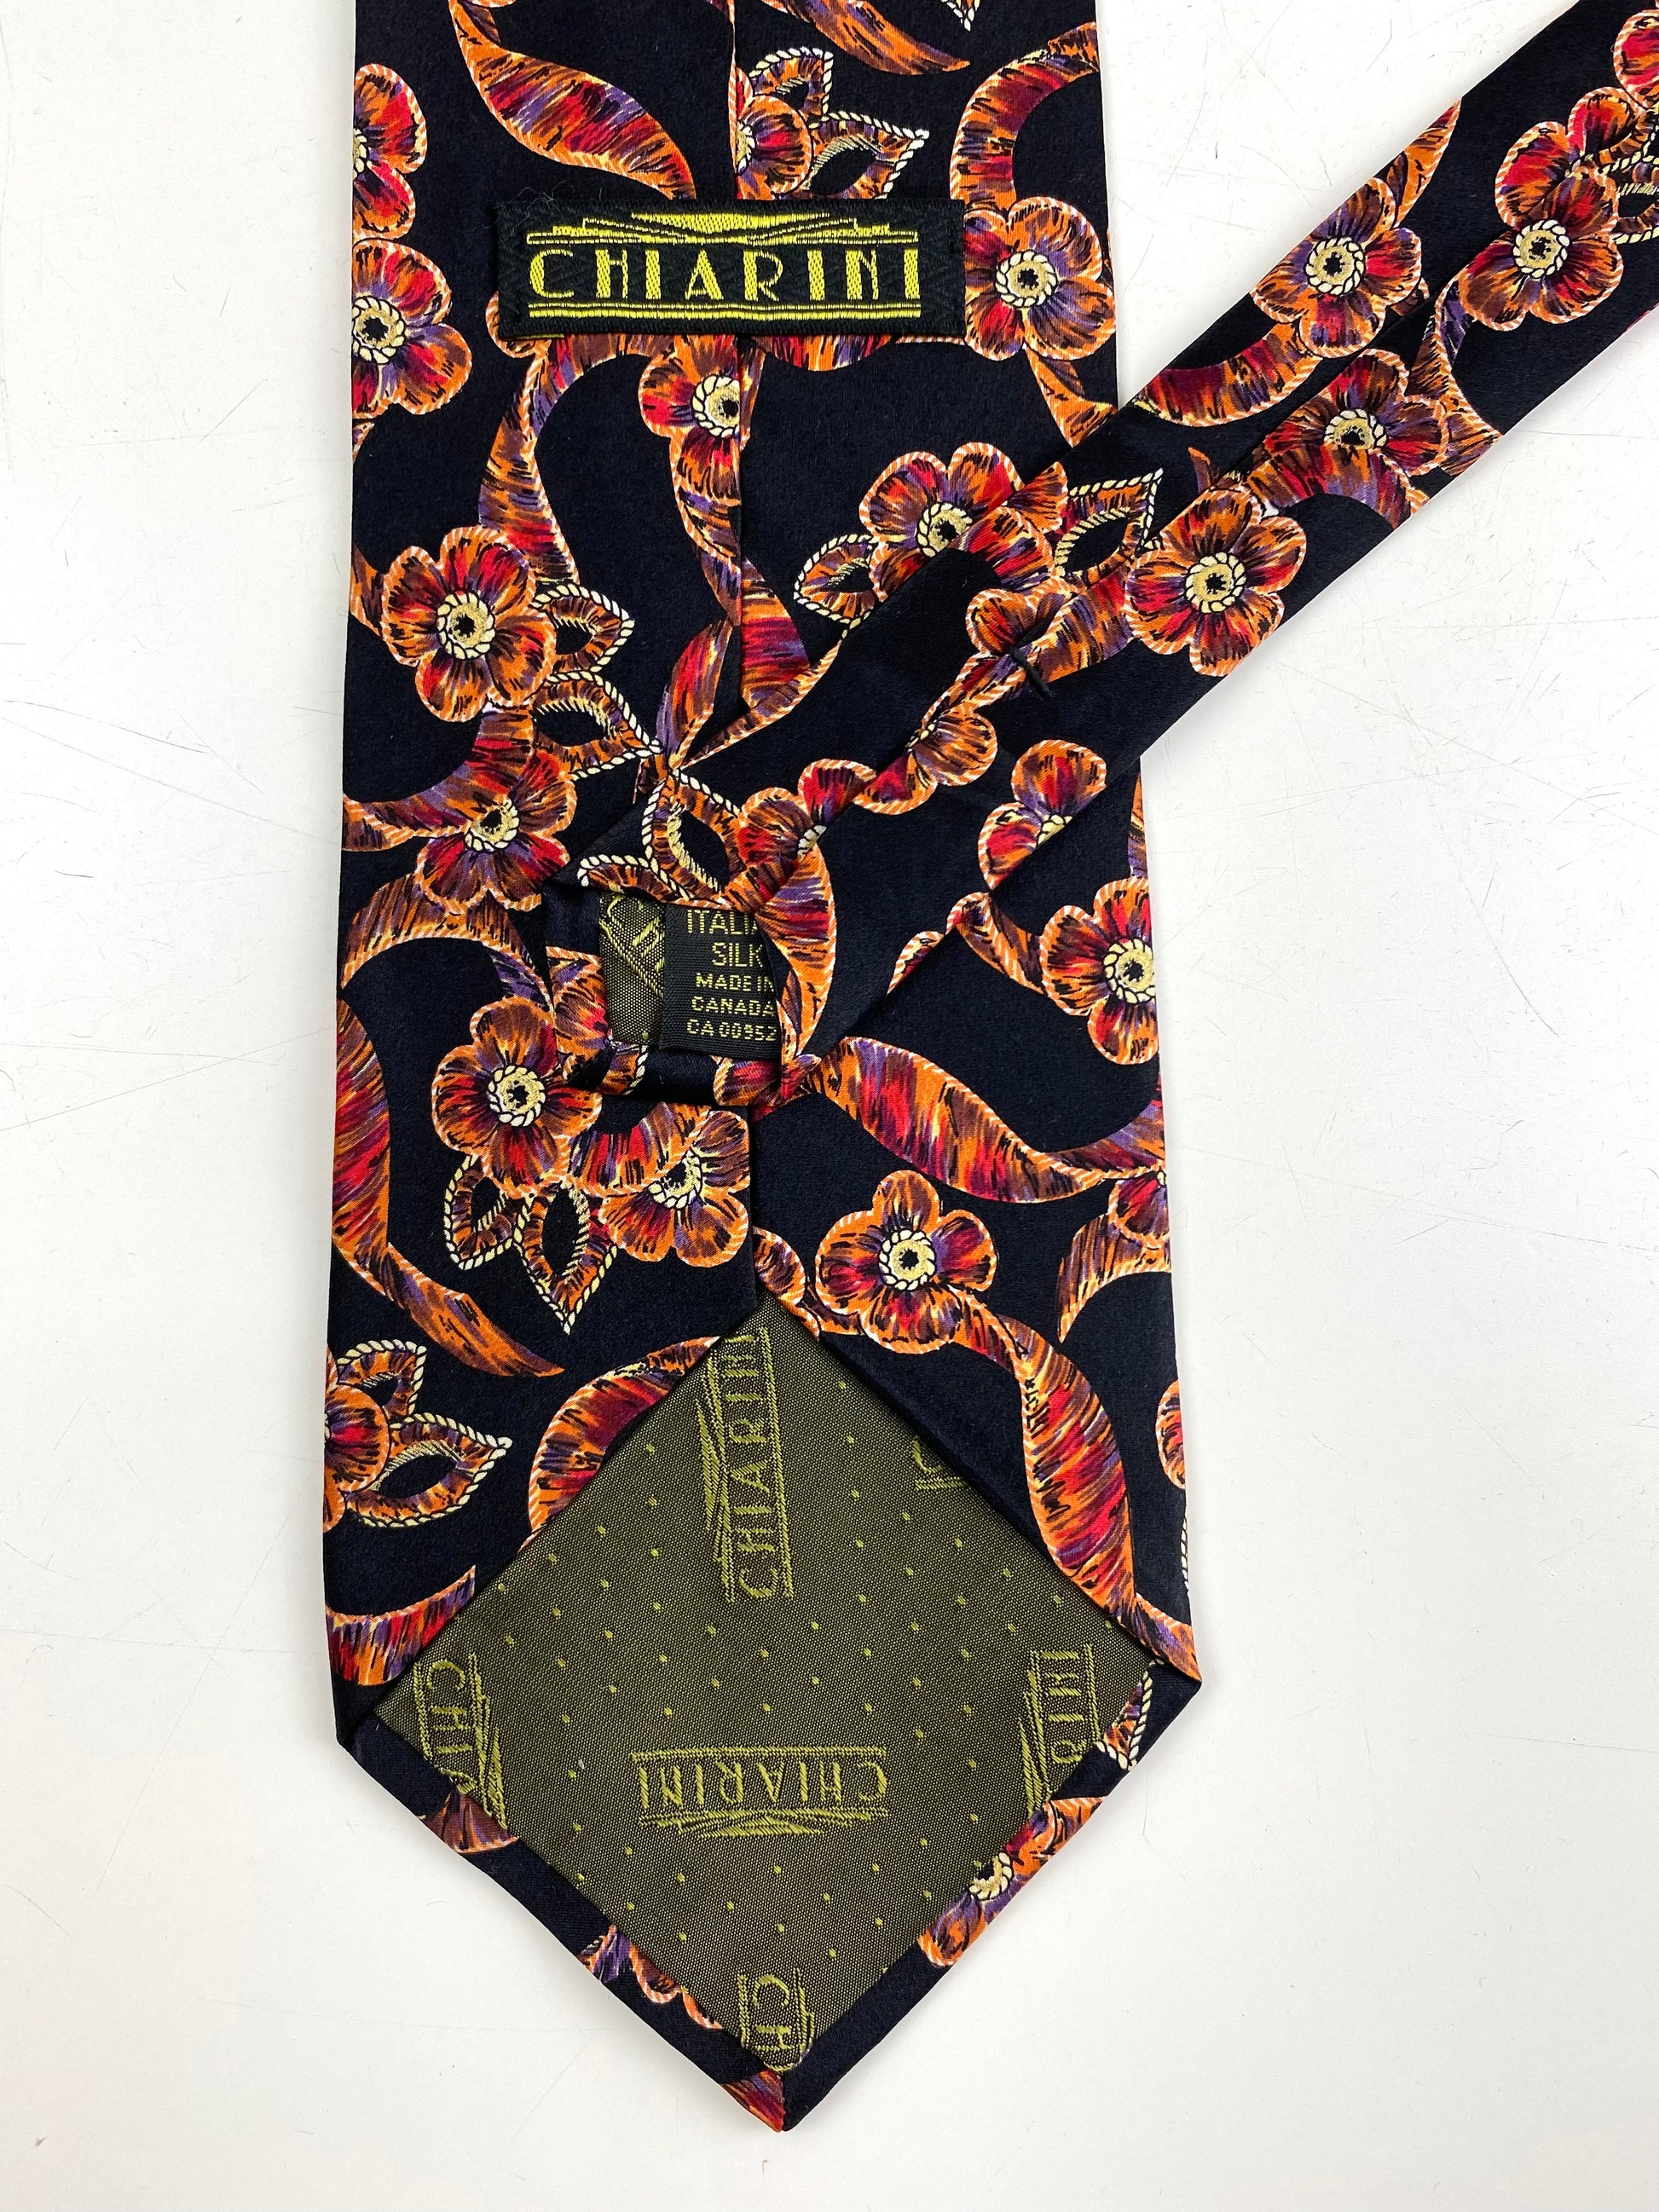 Back and labels of: 90s Deadstock Silk Necktie, Men's Vintage Black/ Orange/ Red Floral Ribbon Pattern Tie, NOS